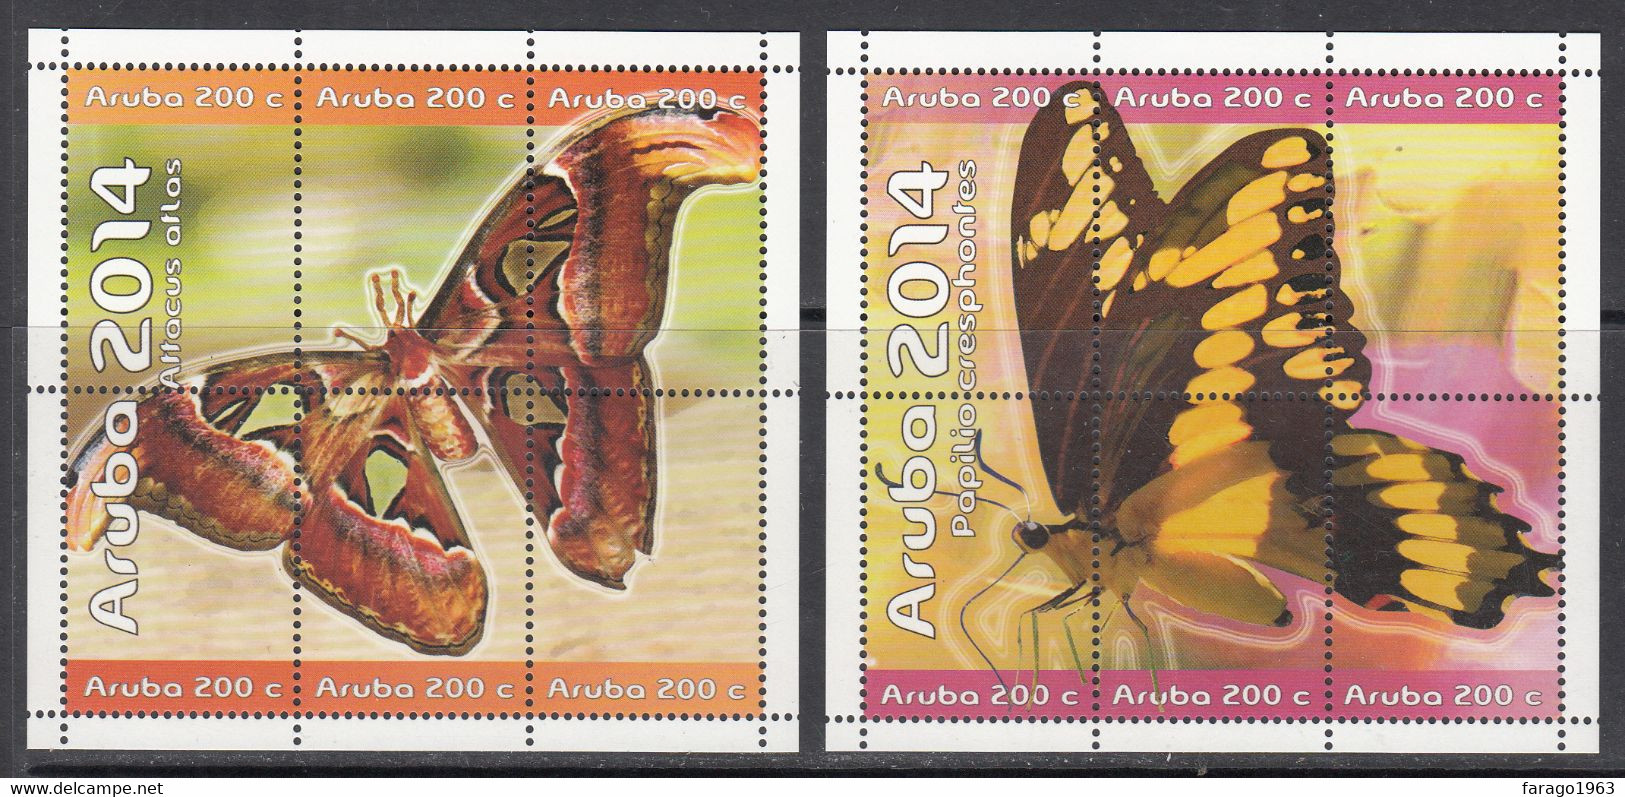 2014 Aruba Butterflies Papillions Complete Set Of 2 Blocks Of 6 MNH @ BELOW Face Value - Curacao, Netherlands Antilles, Aruba